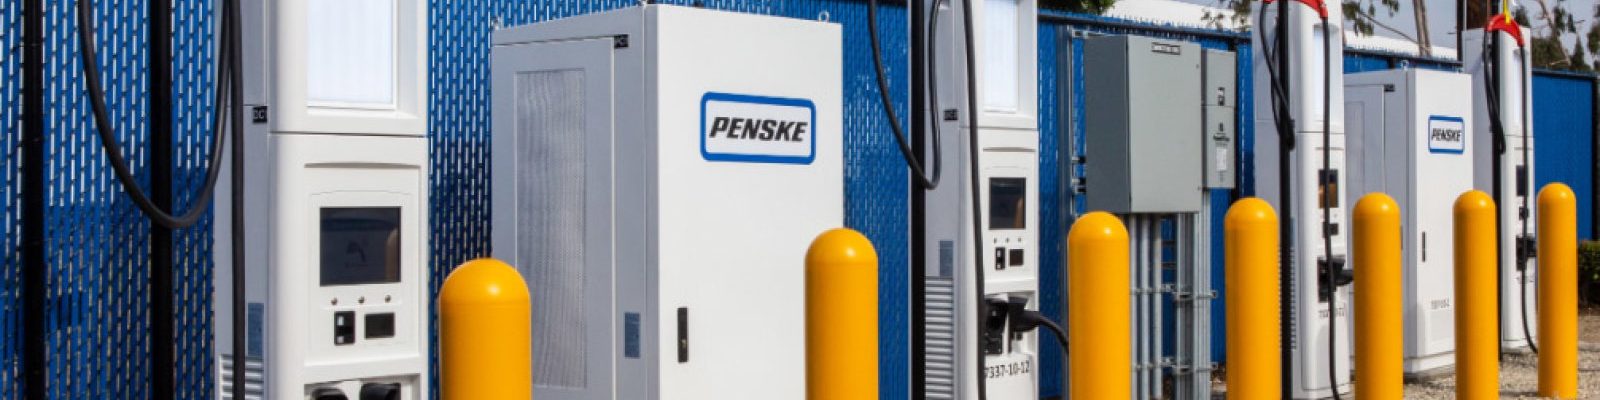 Penske Leasing estrena cargadores rápidos para camiones eléctricos